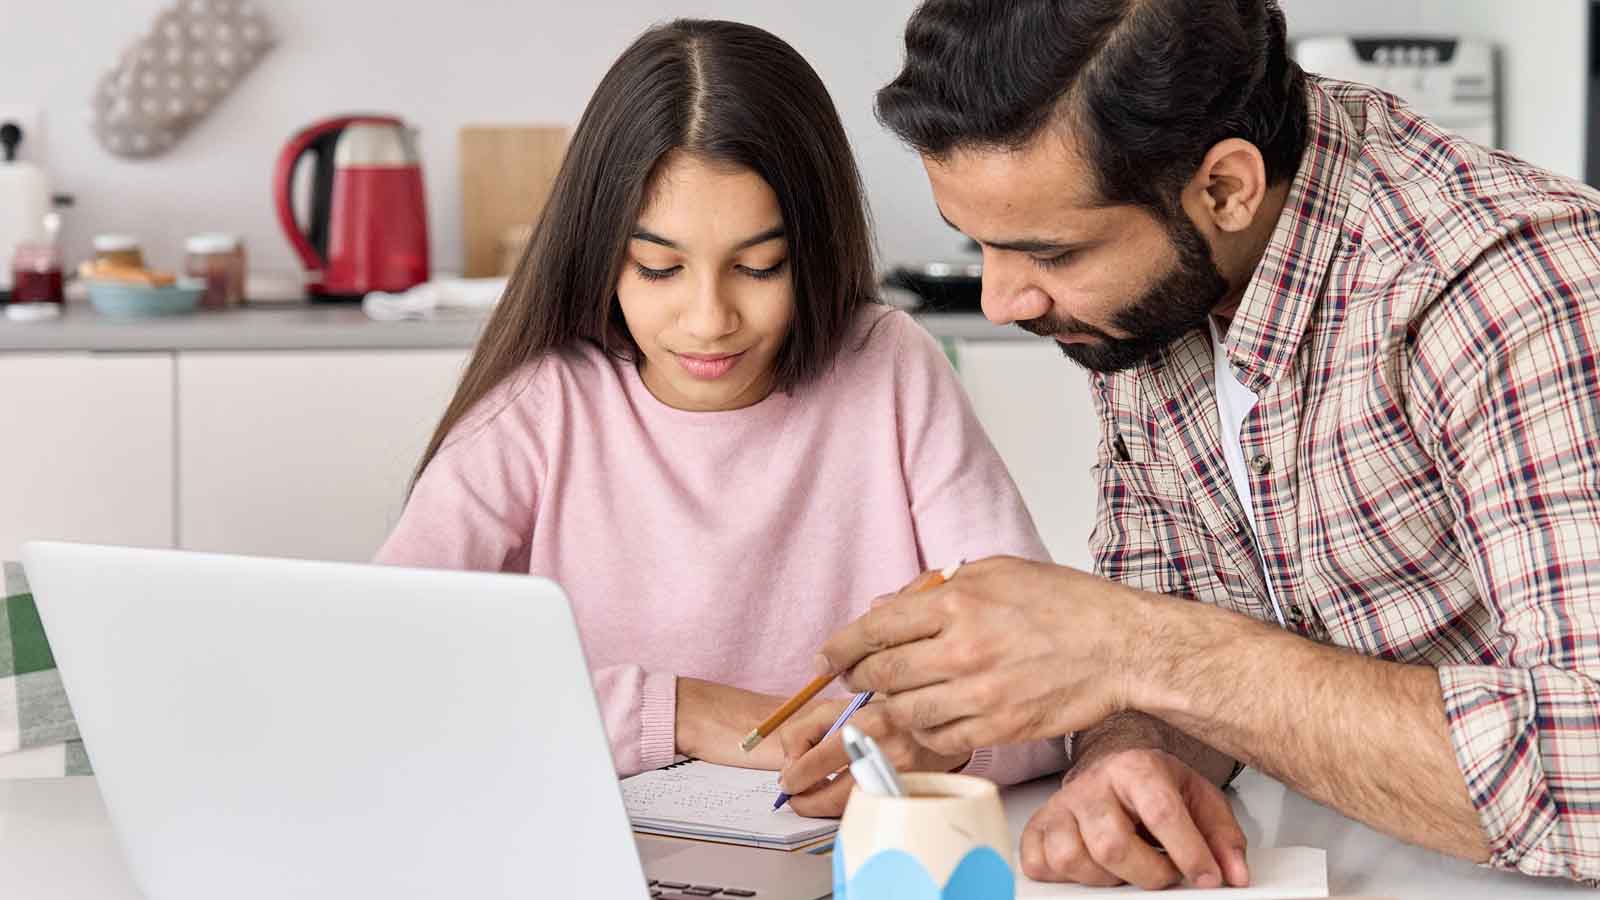 Foto: Shutterstock / insta_photos. Bildet viser en pappa som hjelper sin dateter med leksene, på bordet er en PC.